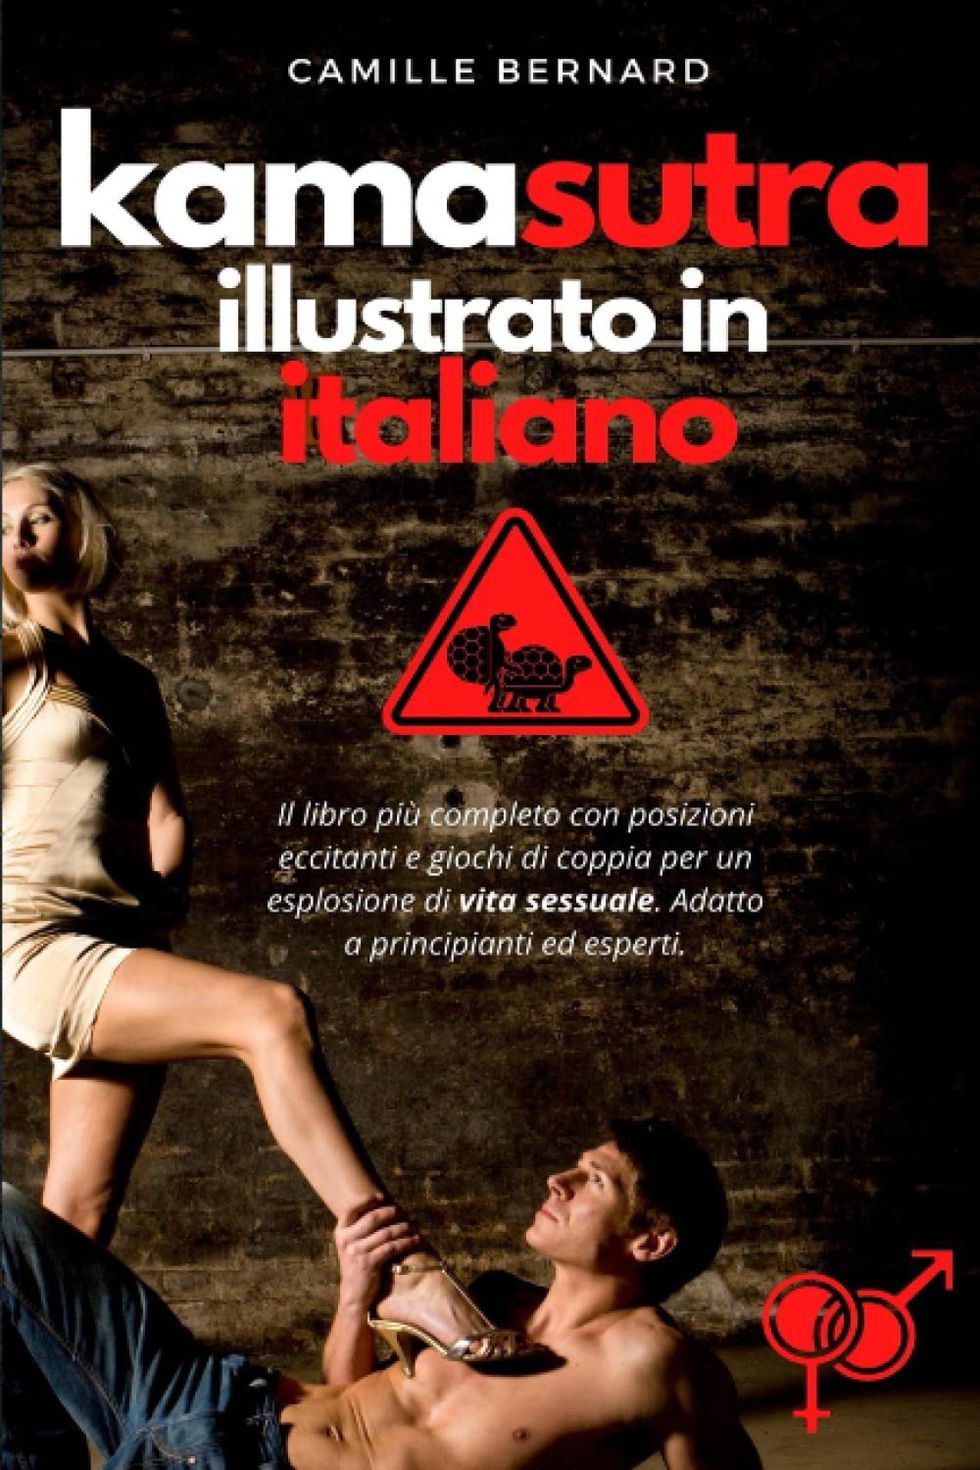 Kamasutra Illustrato in Italiano: Il libro più completo con posizioni eccitanti e giochi di coppia per un esplosione di vita sessuale. Adatto a principianti ed esperti.